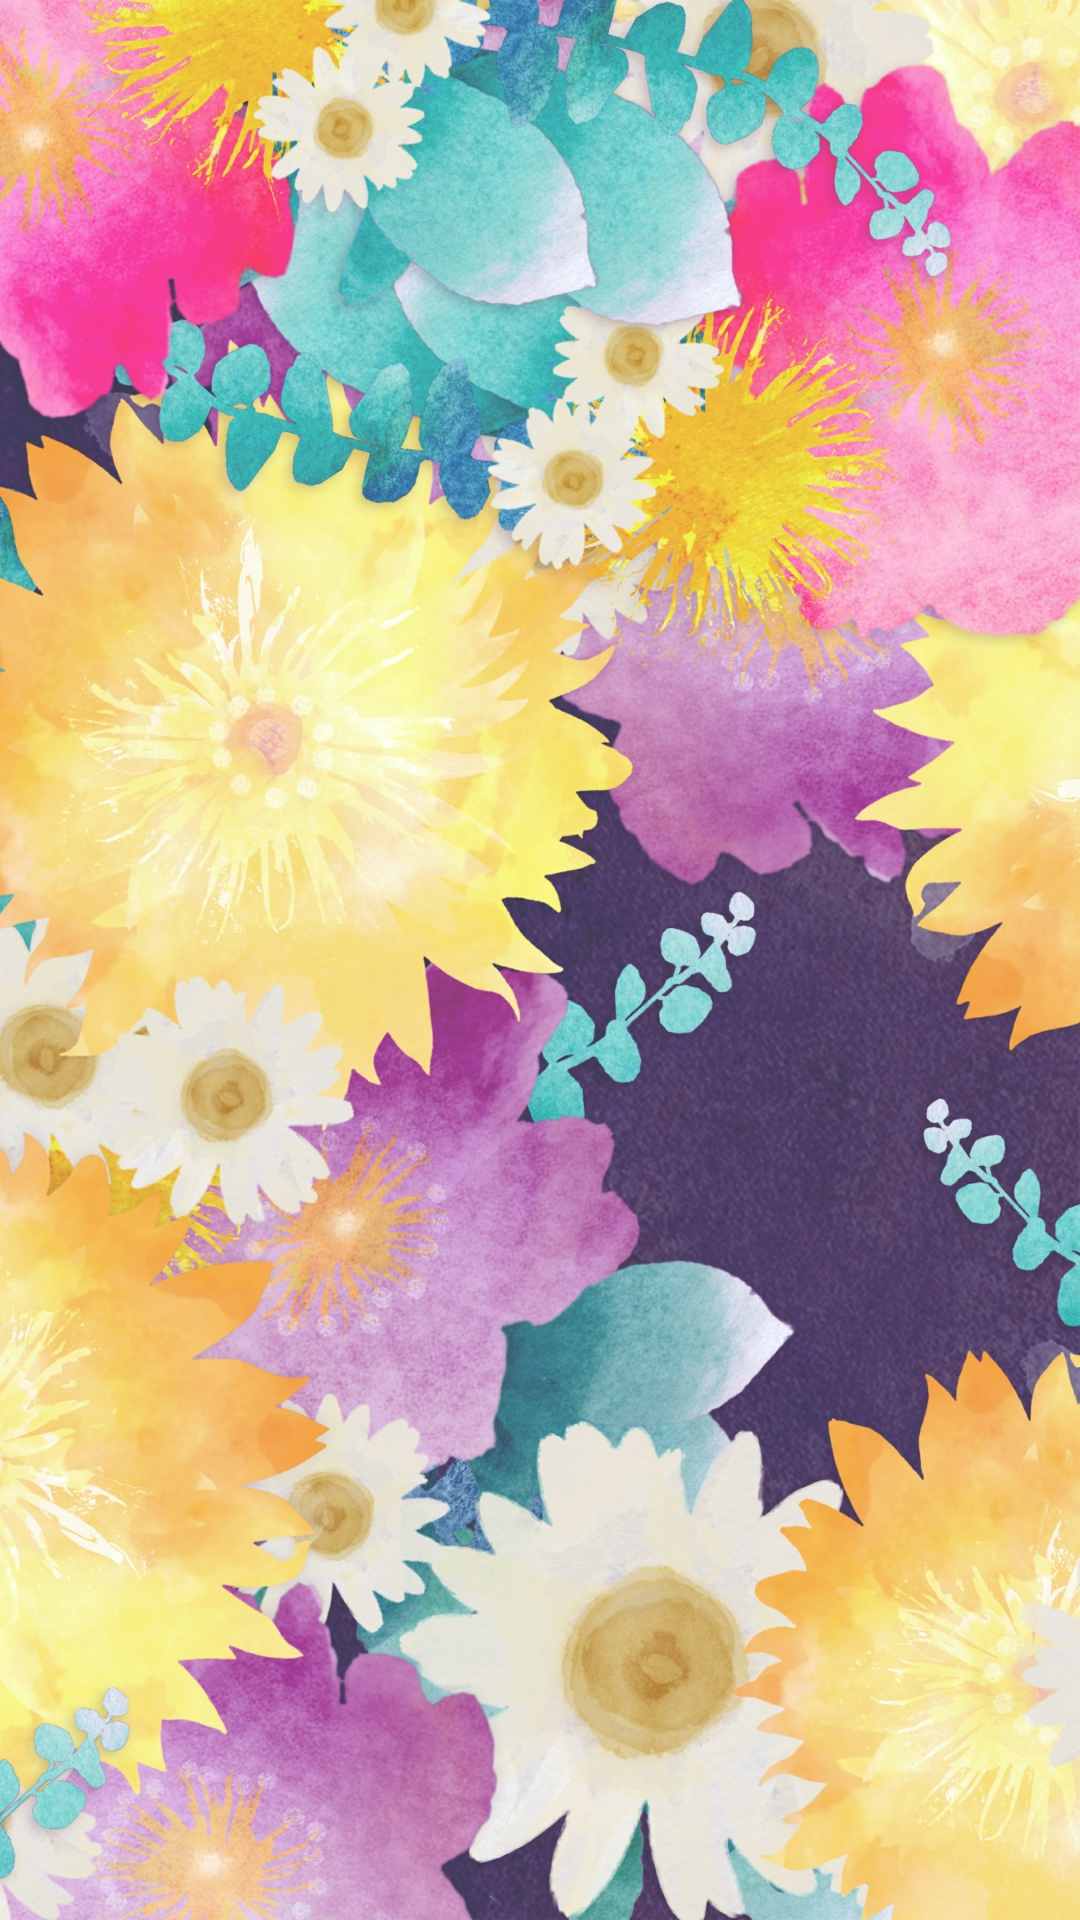 Flower pattern background